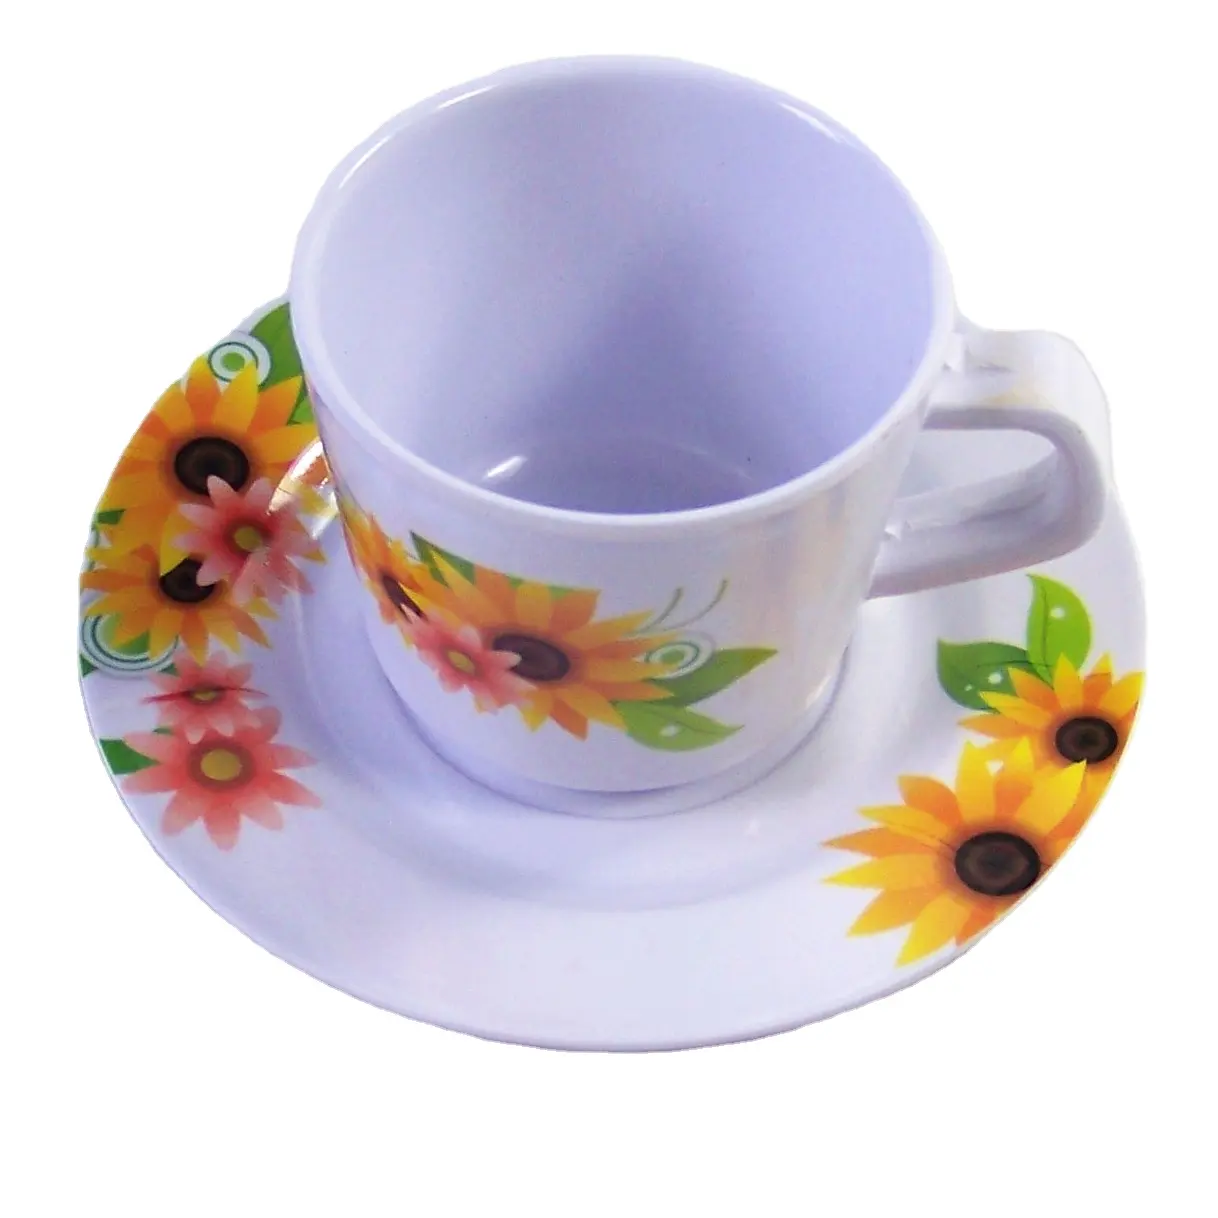 Melamine कप धारक ट्रे थोक कॉफी कप के साथ dishwasher सुरक्षित सूरजमुखी melamine कॉफी कप